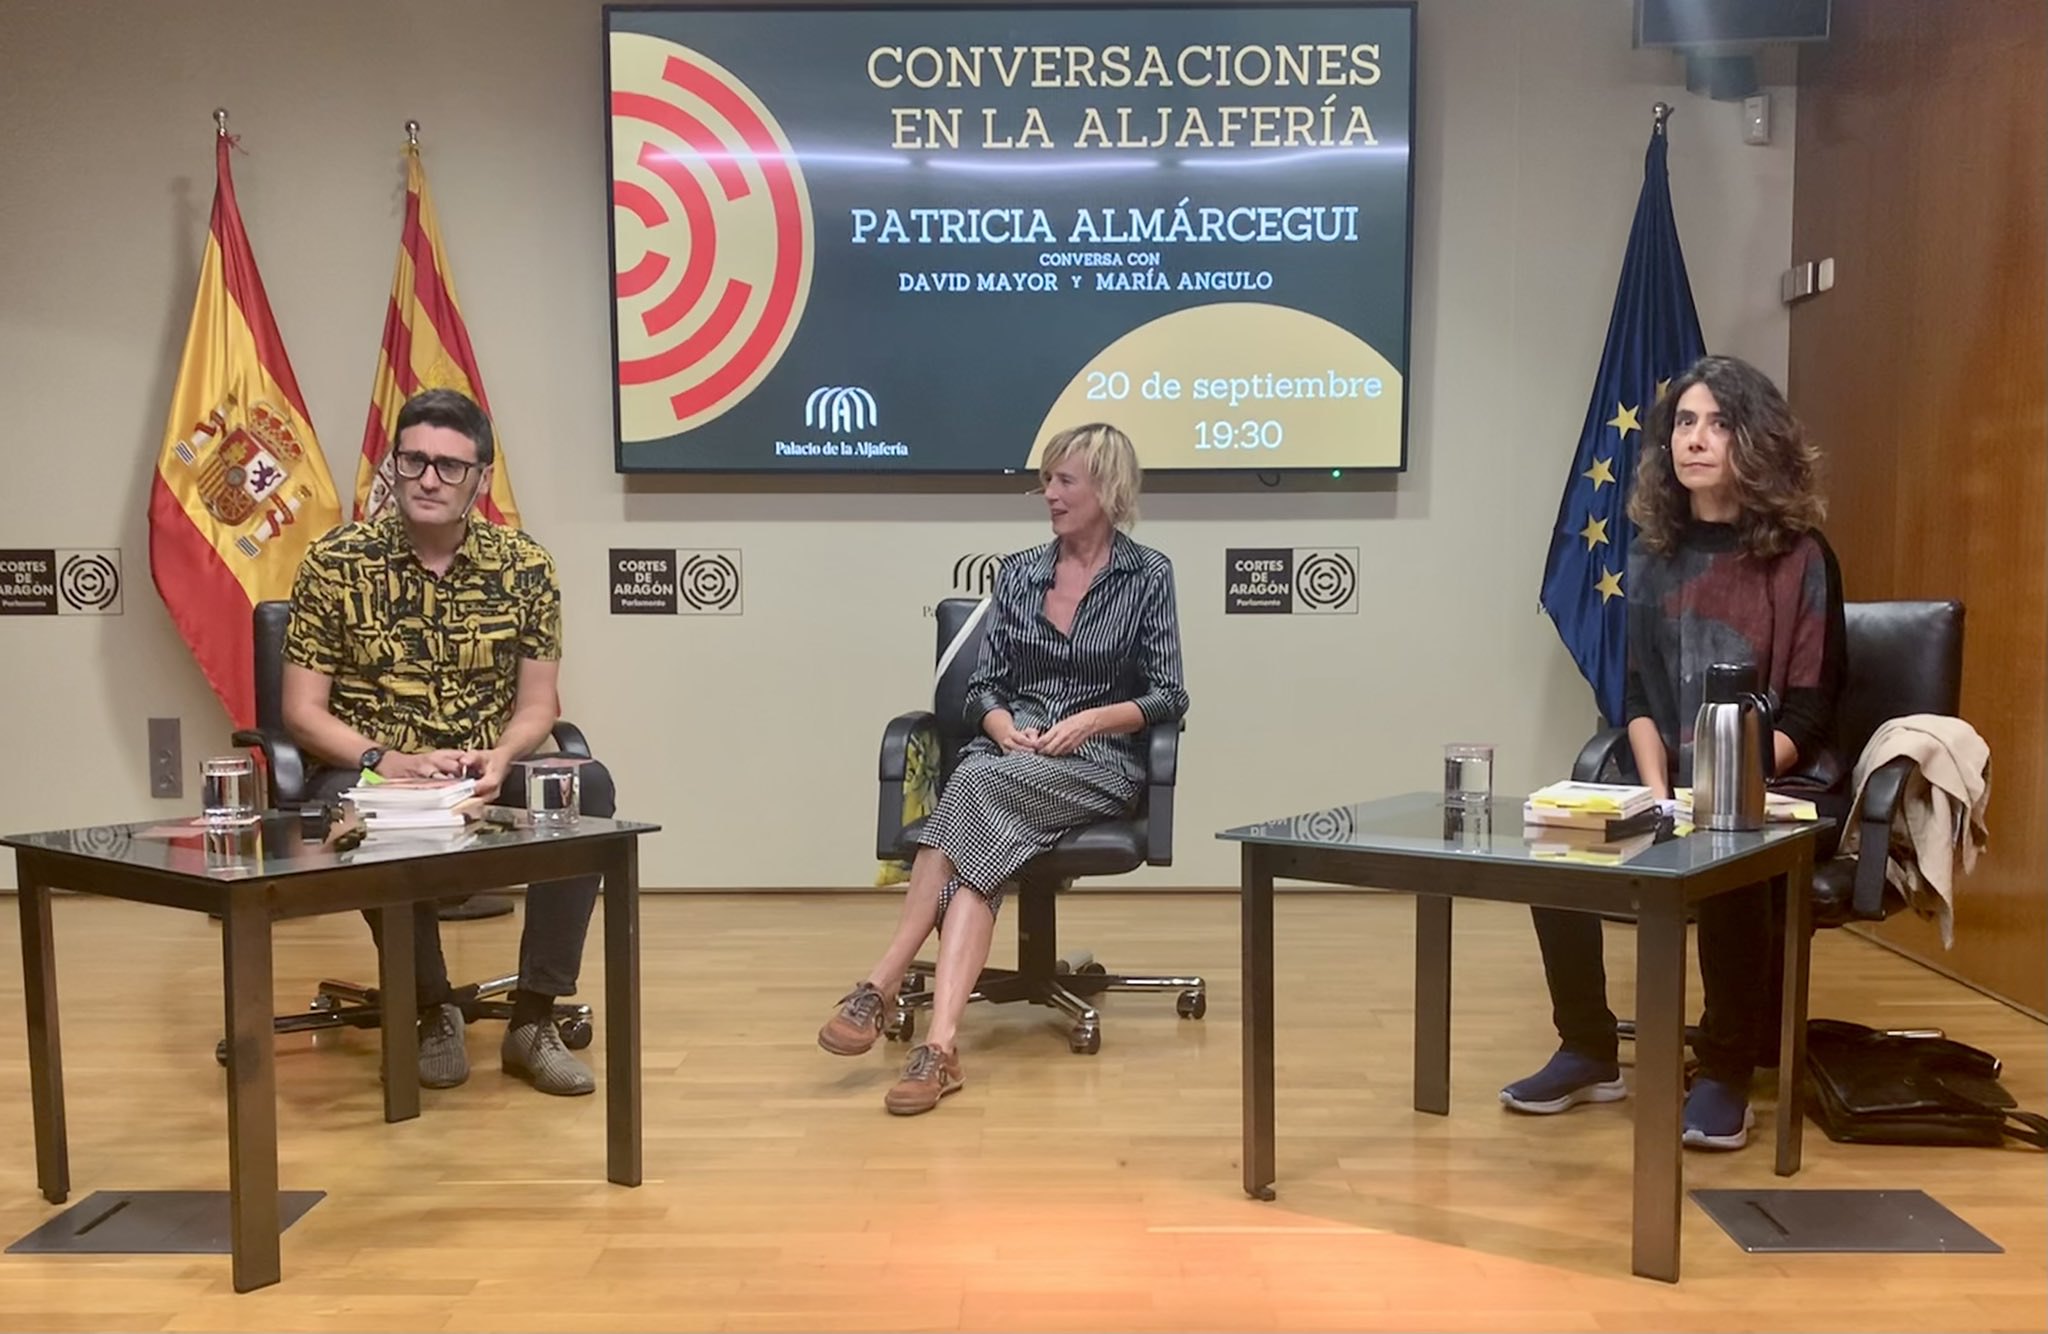 Patricia Almarcegui, María Angulo y David Mayor durante la conversación. Fuente: Palacio de la Aljafería